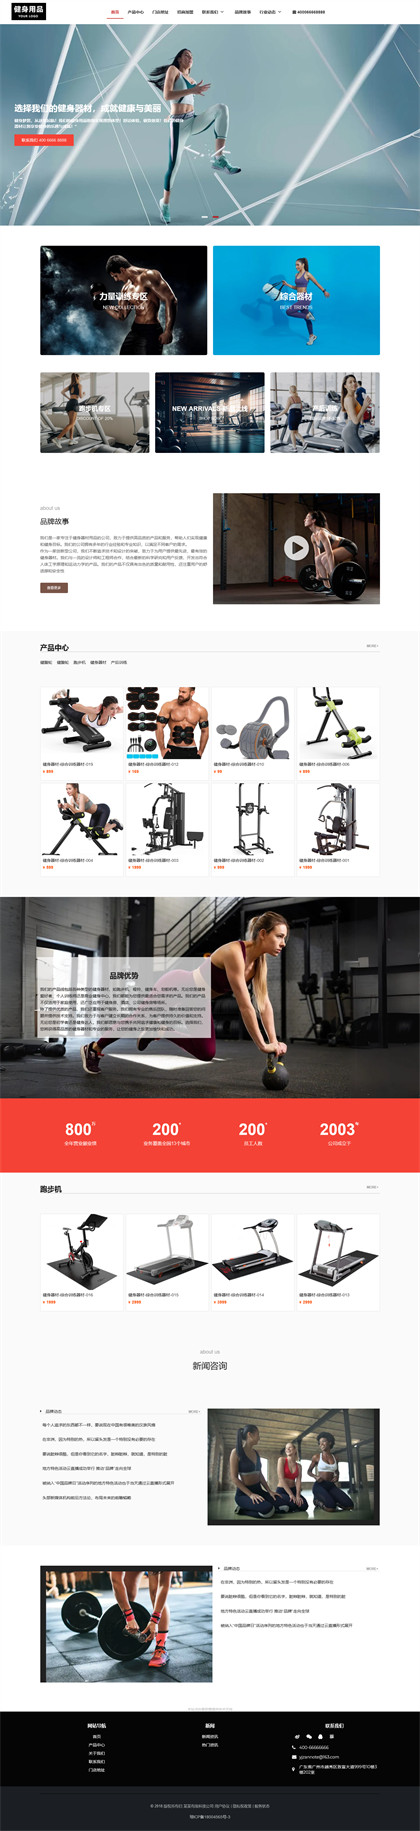 健身器材-健身用品-健身设备-运动用品-运动器材网站模板网站模板图片